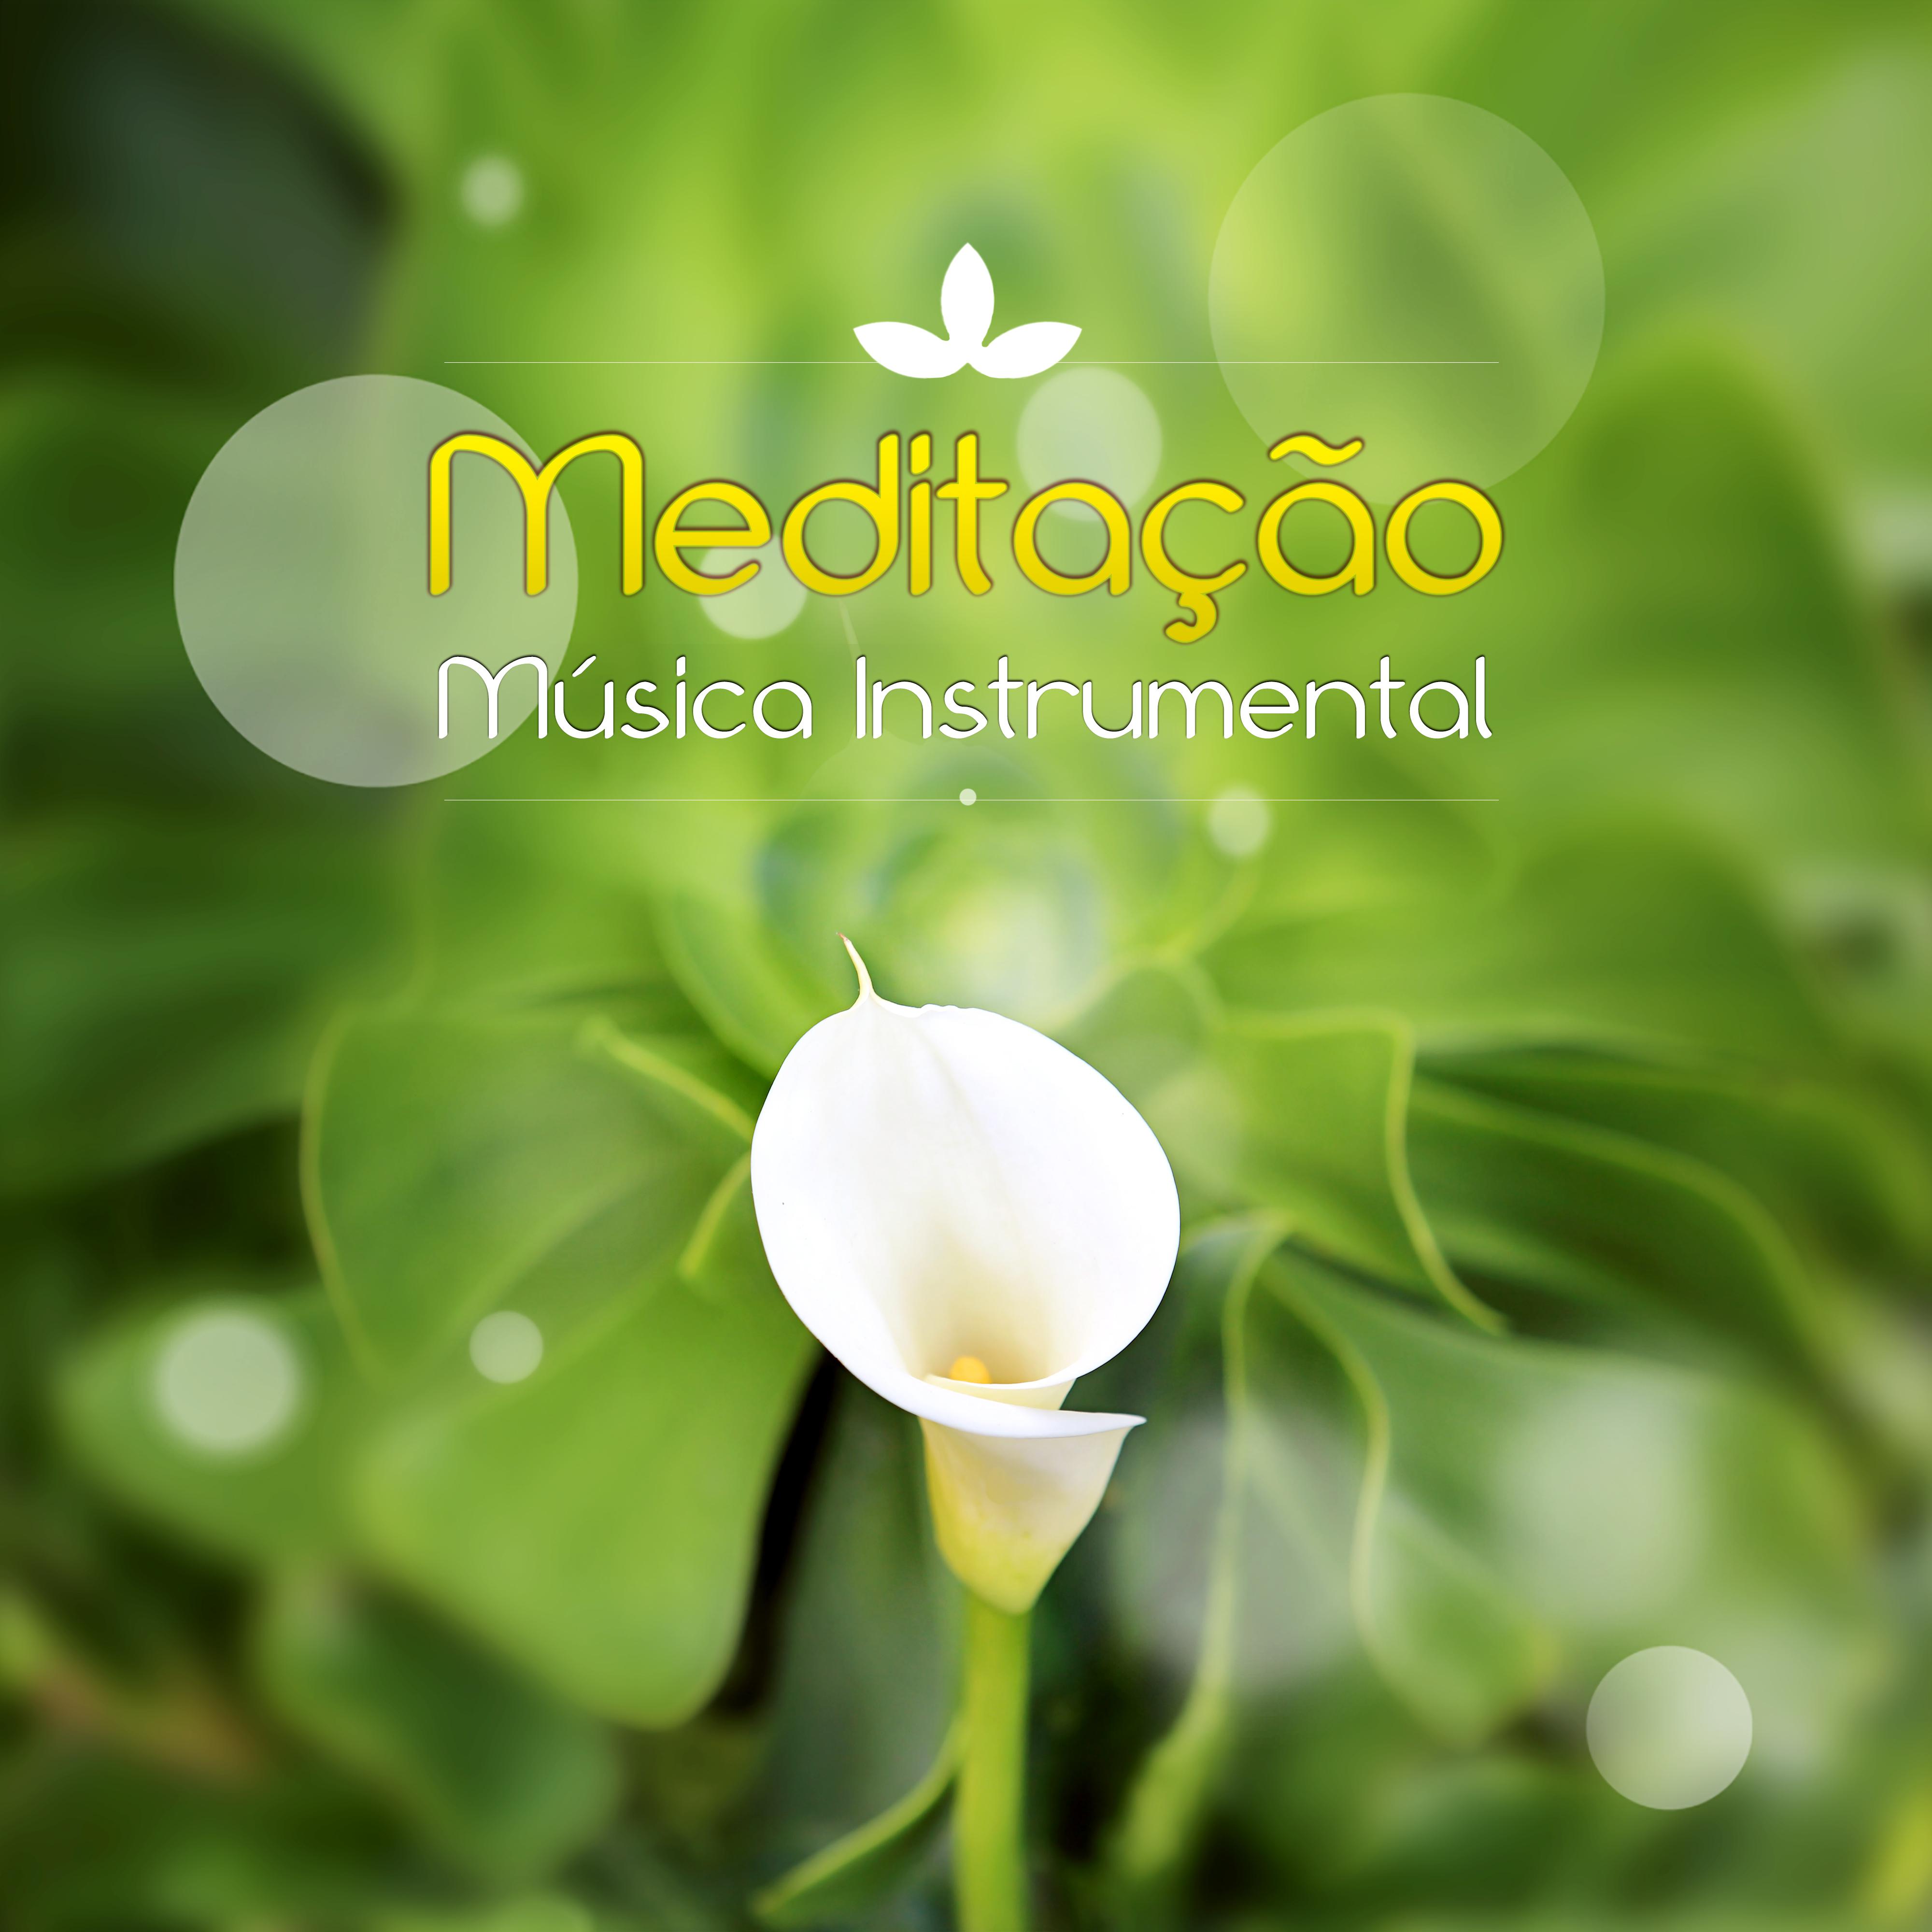 Medita o  Mu sica Instrumental  Harmonia, Mu sica de Flauta, Piano, Guitarra, Sons da Natureza, Musica Reiki, Zen, Yoga, Espiritualidade